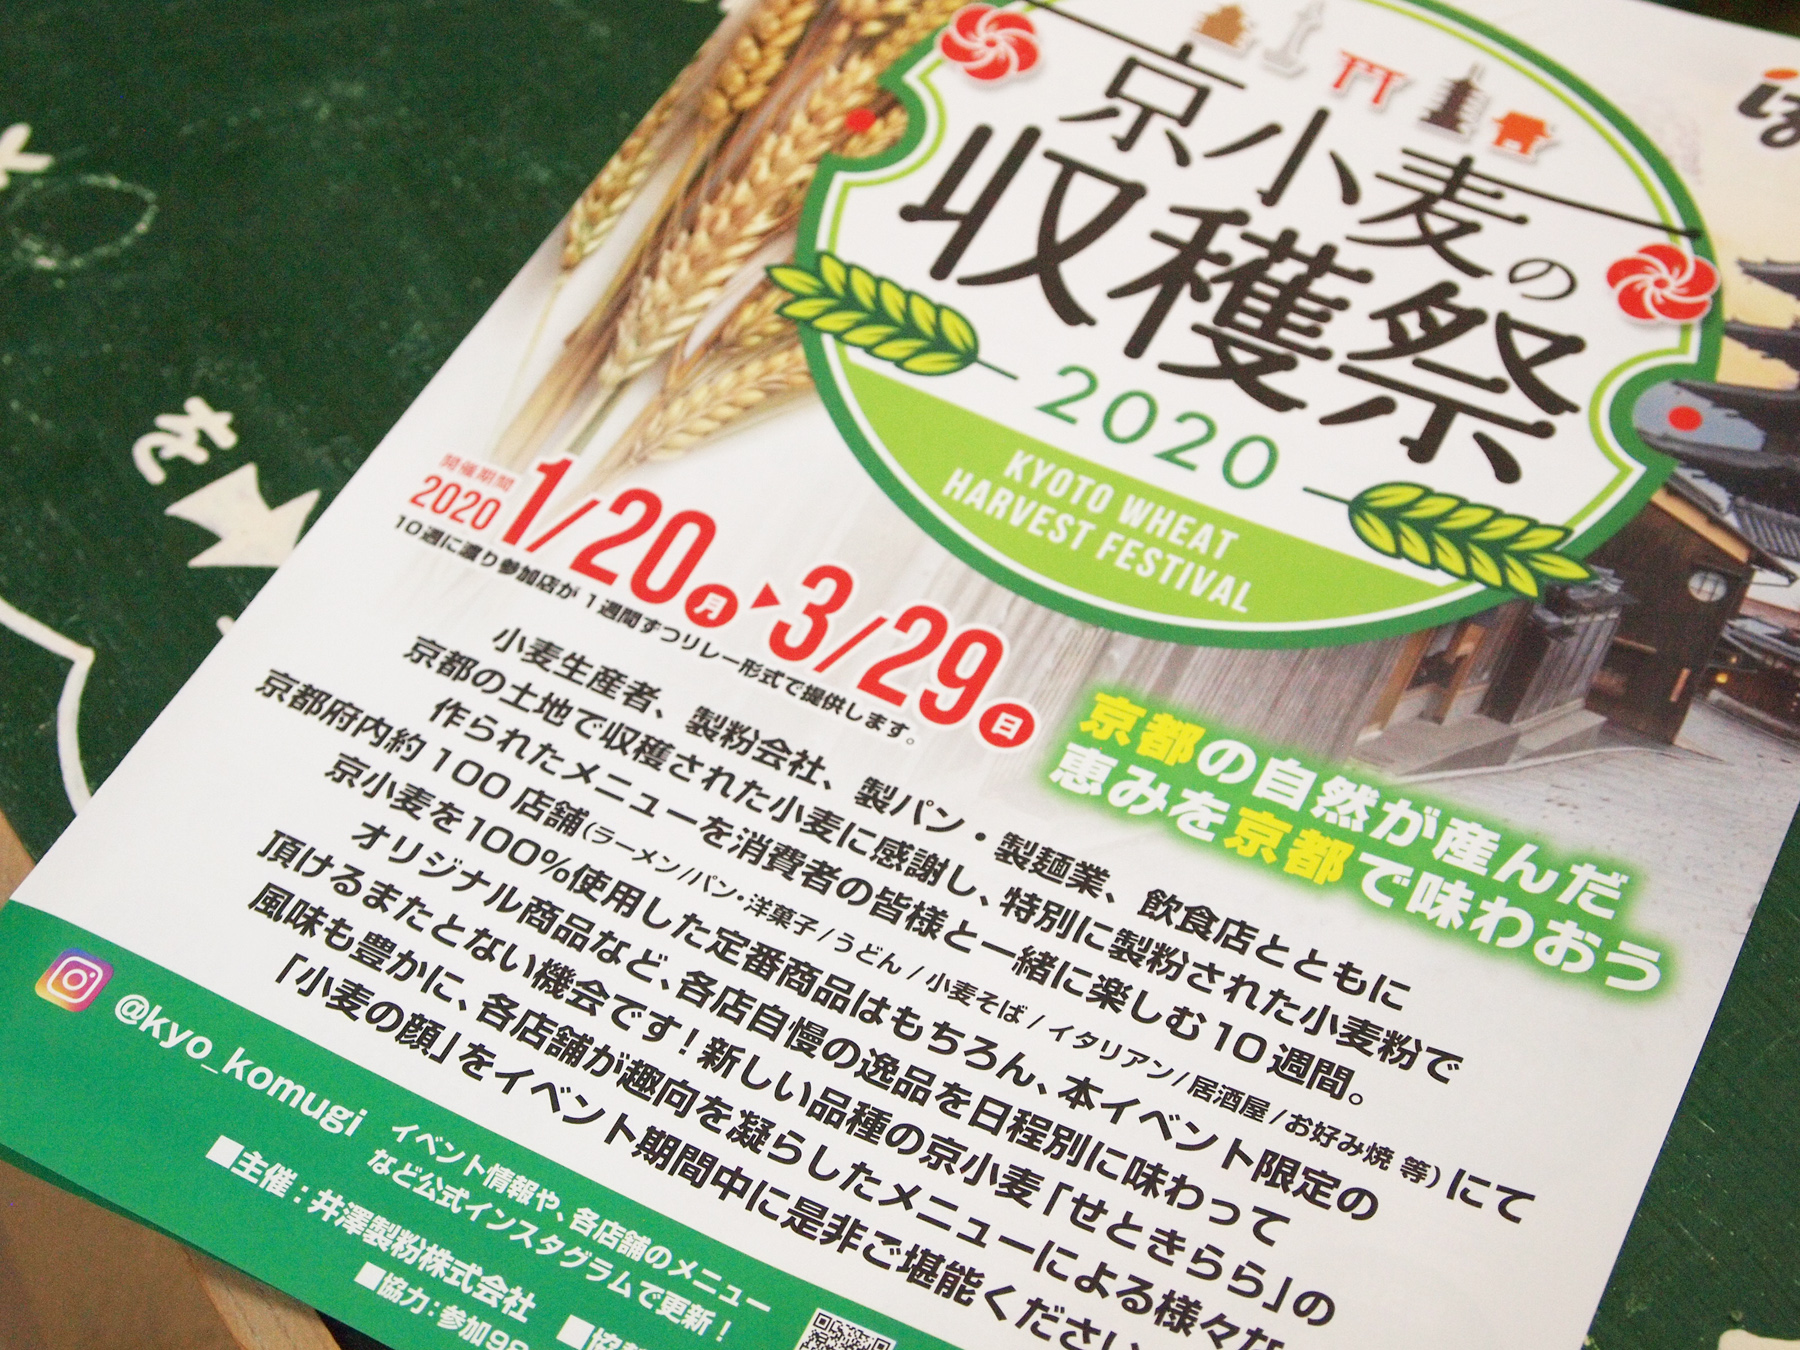 イベント情報 京小麦の収穫祭 参加のお知らせ セカンドハウス 公式